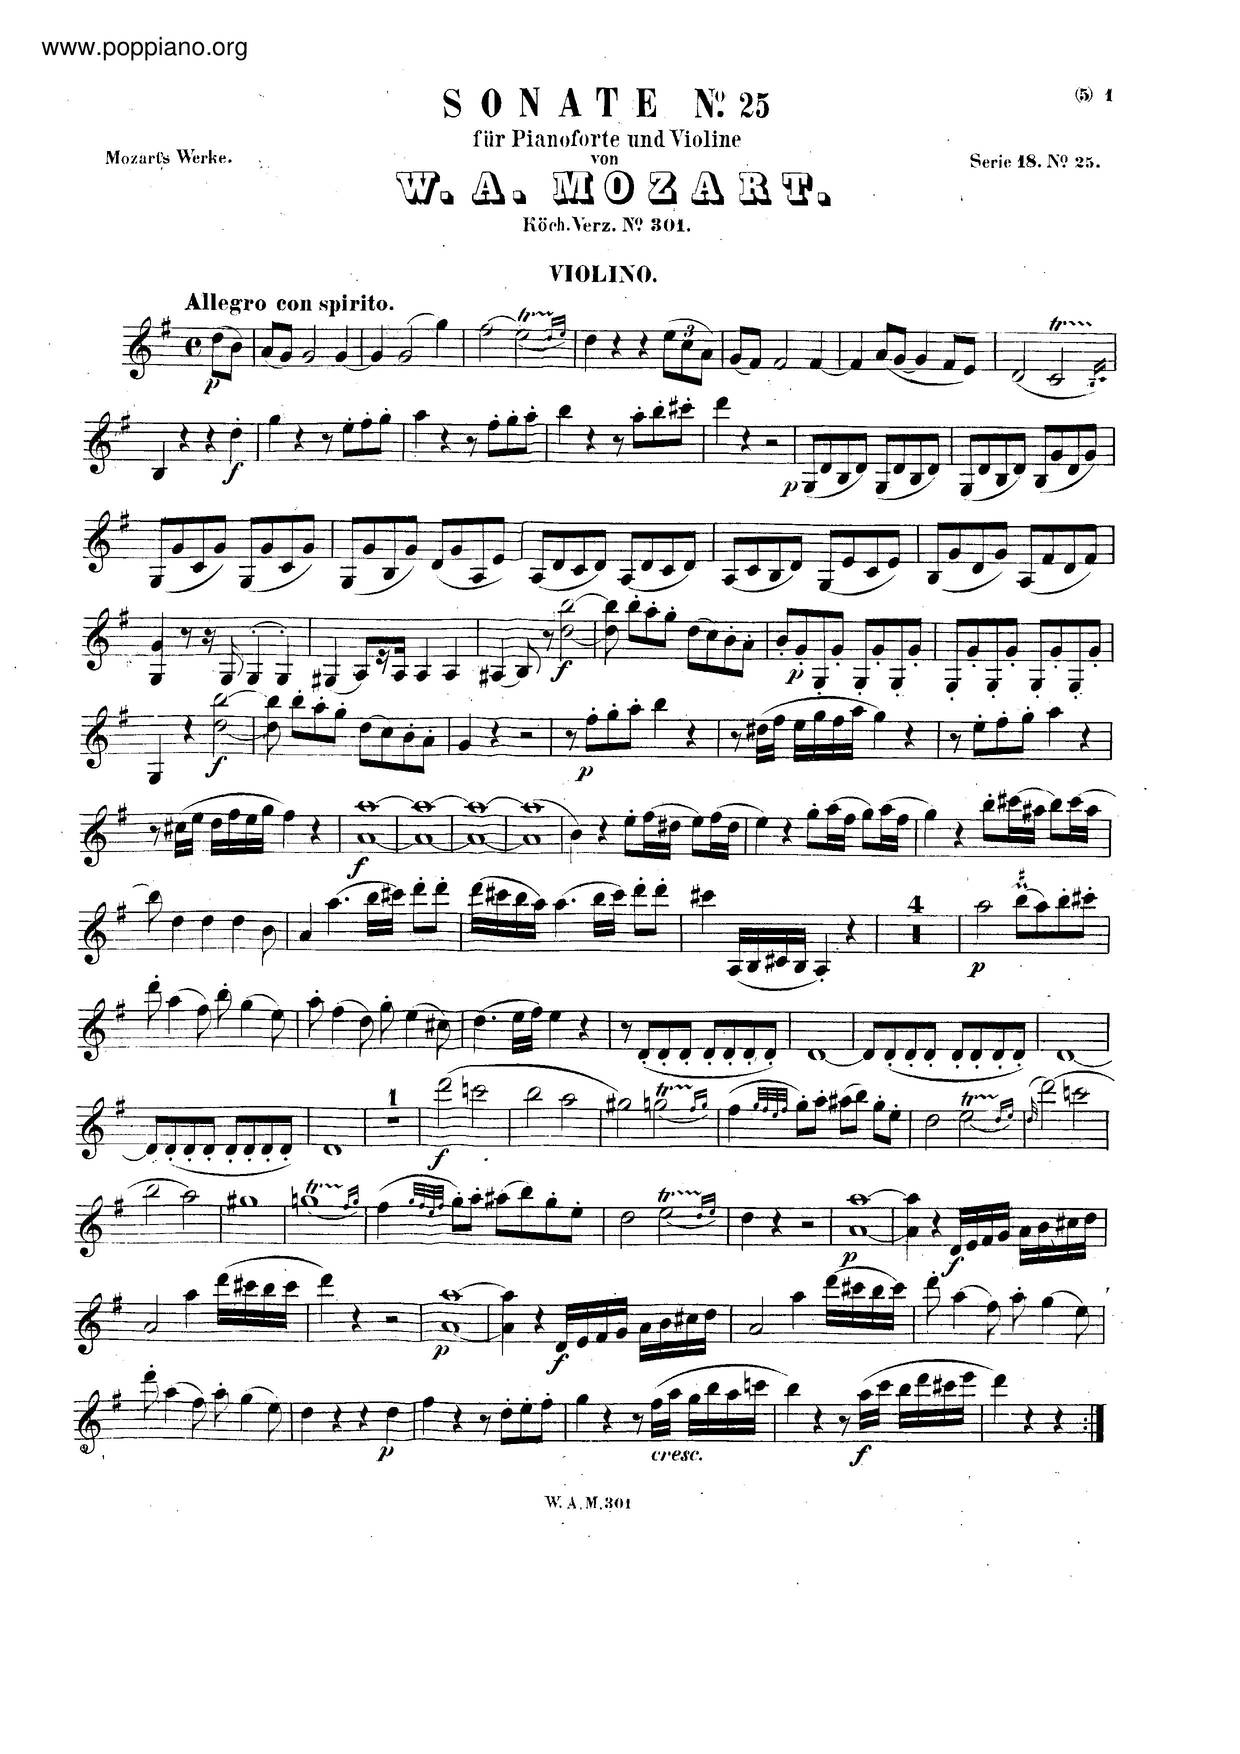 Violin Sonata No. 18, K. 301 Score